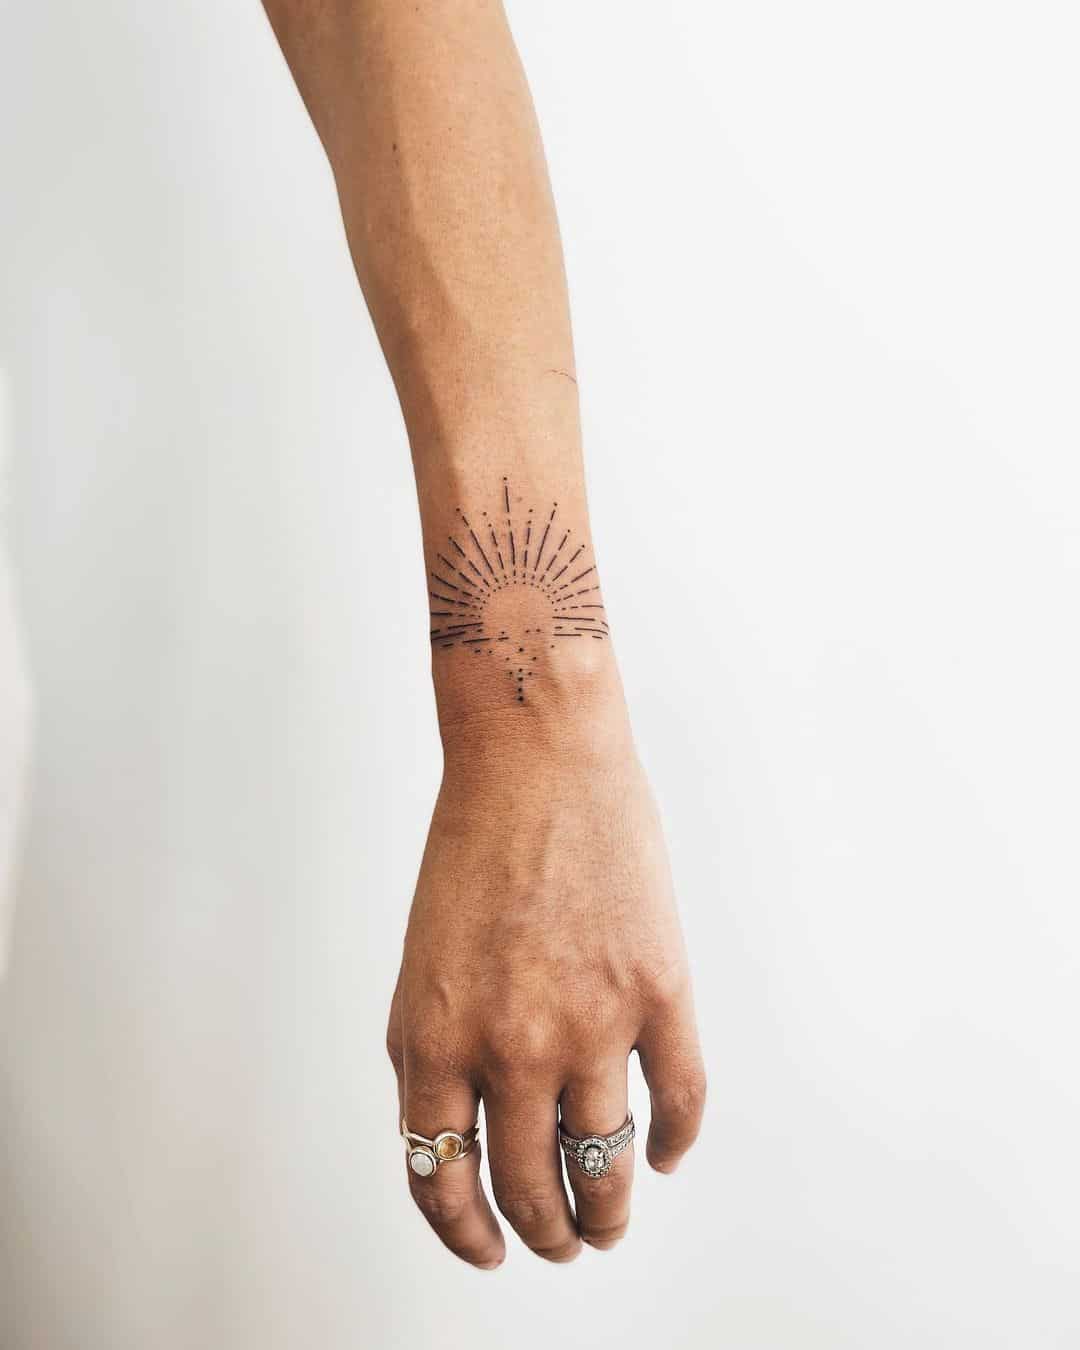 10 Best Geometric Tattoos Top Ideas For Geometric Tattoos  MrInkwells